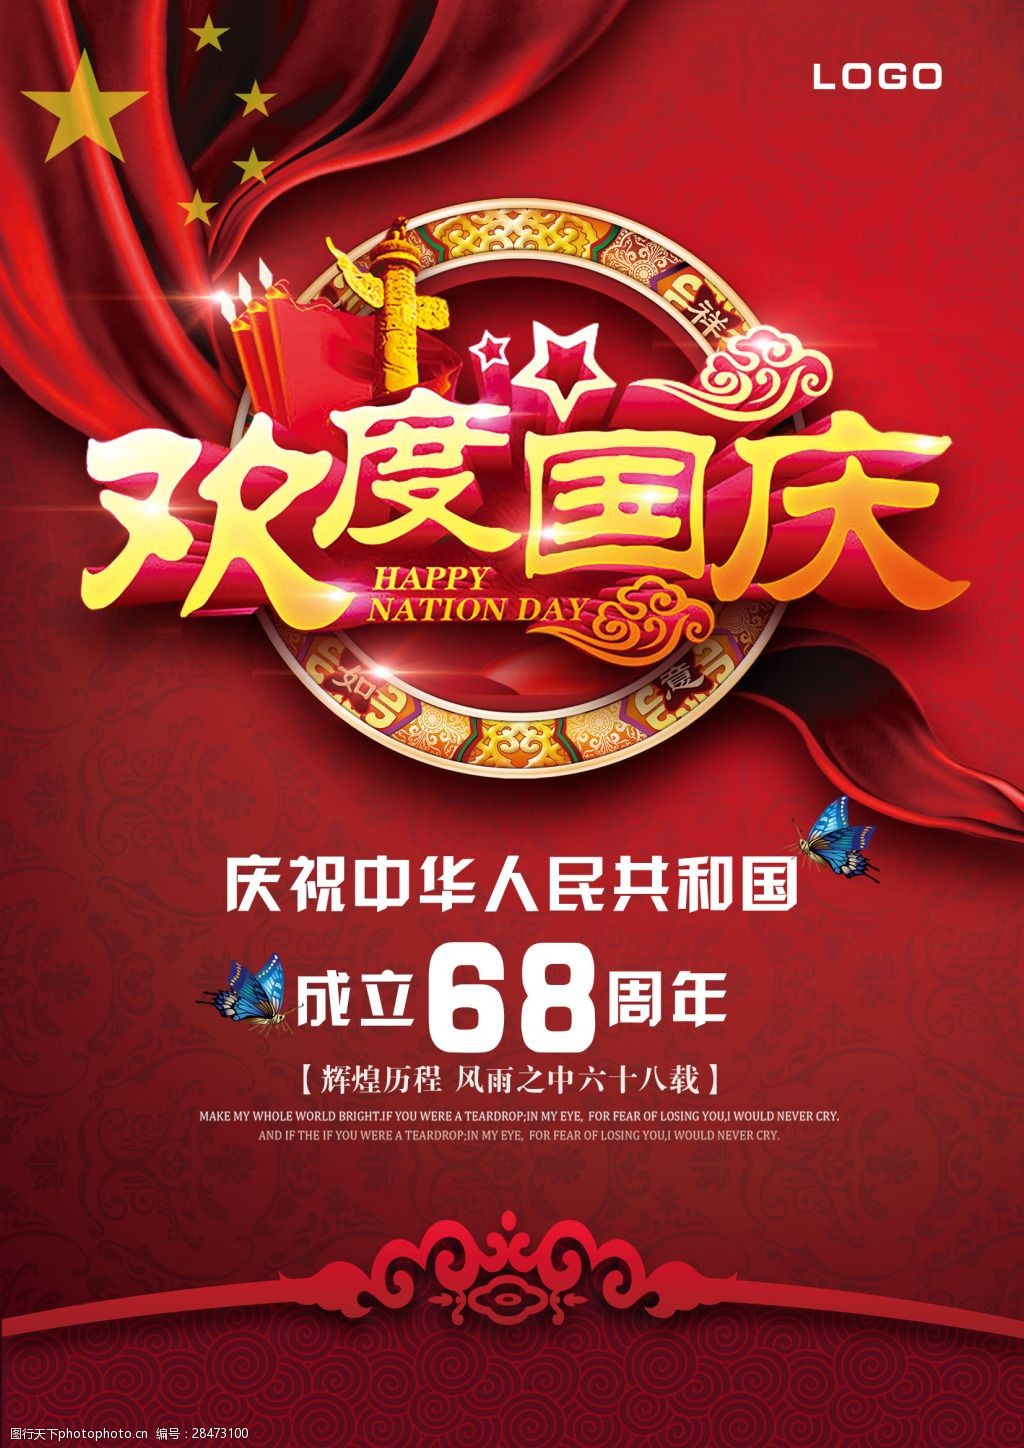 关键词:红色奢华欢度国庆微信宣传广告 庆祝 国庆节 68周年 节日海报